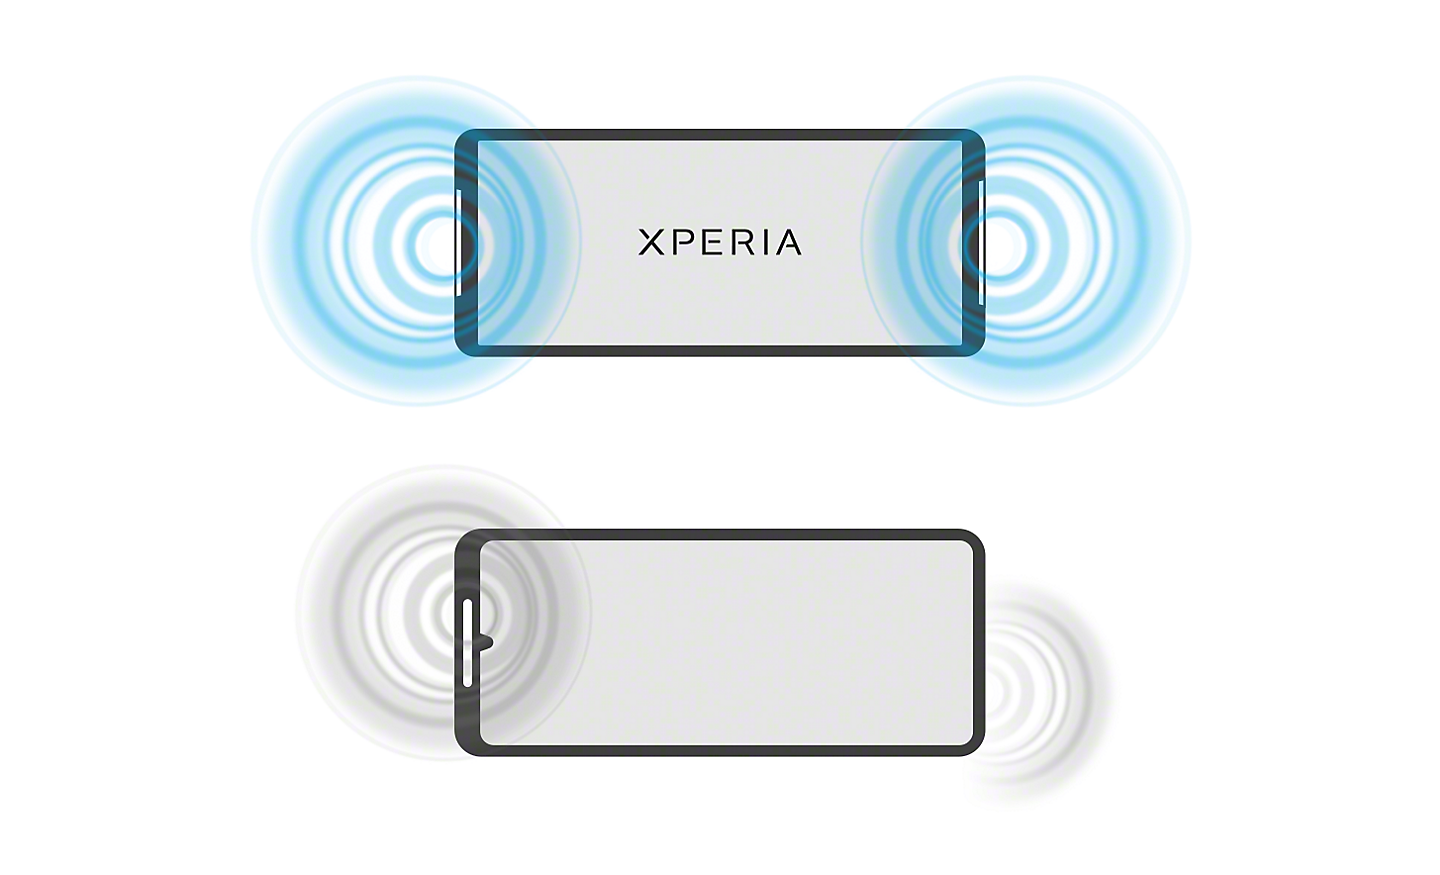 Bild som jämför ljudvågor från en Xperia med kompletta stereohögtalare med ljudvågor från en vanlig smartphone